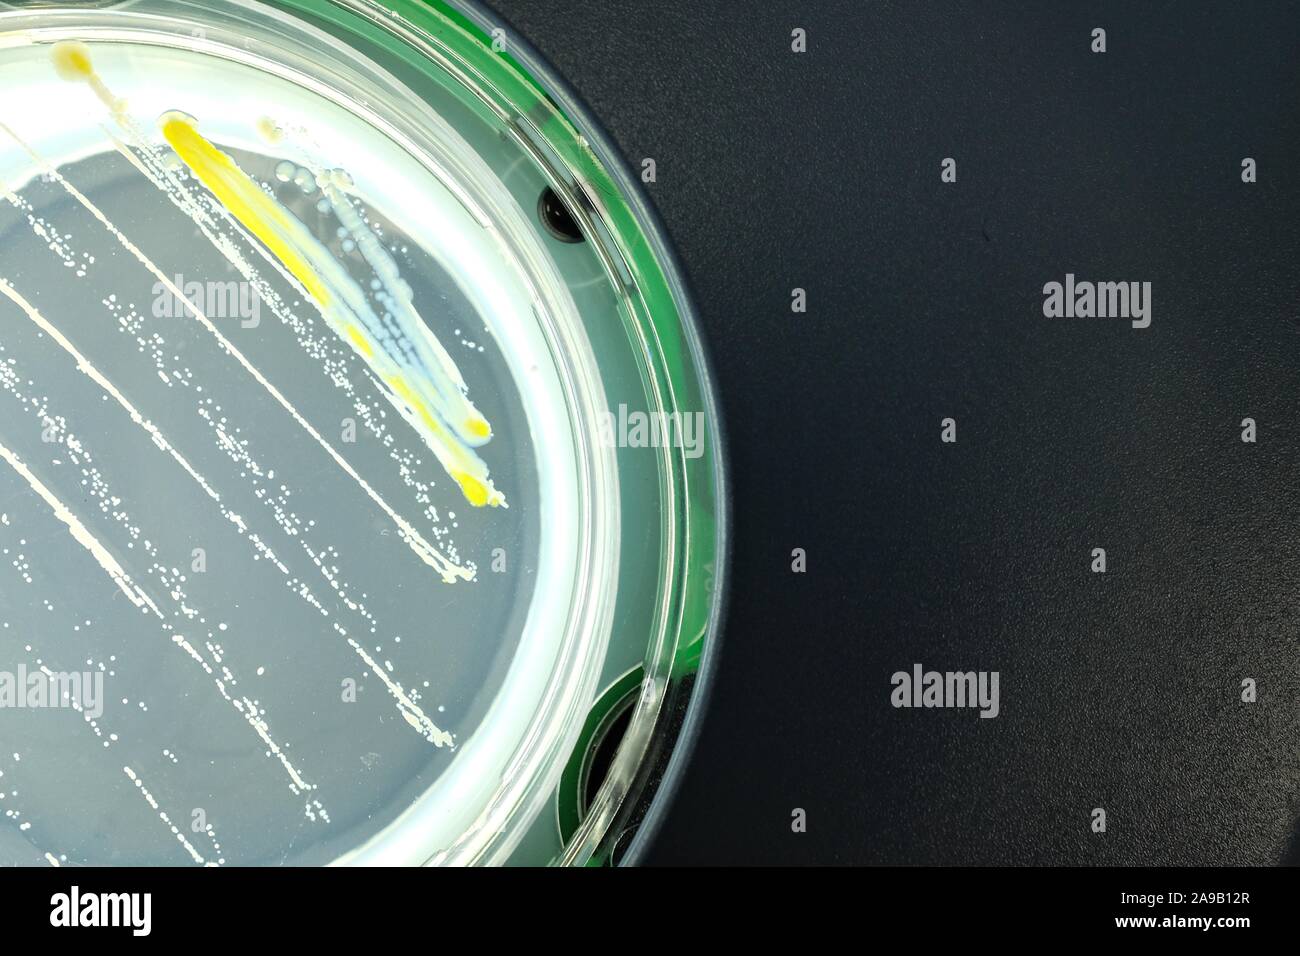 Bacteria on agar surface Stock Photo